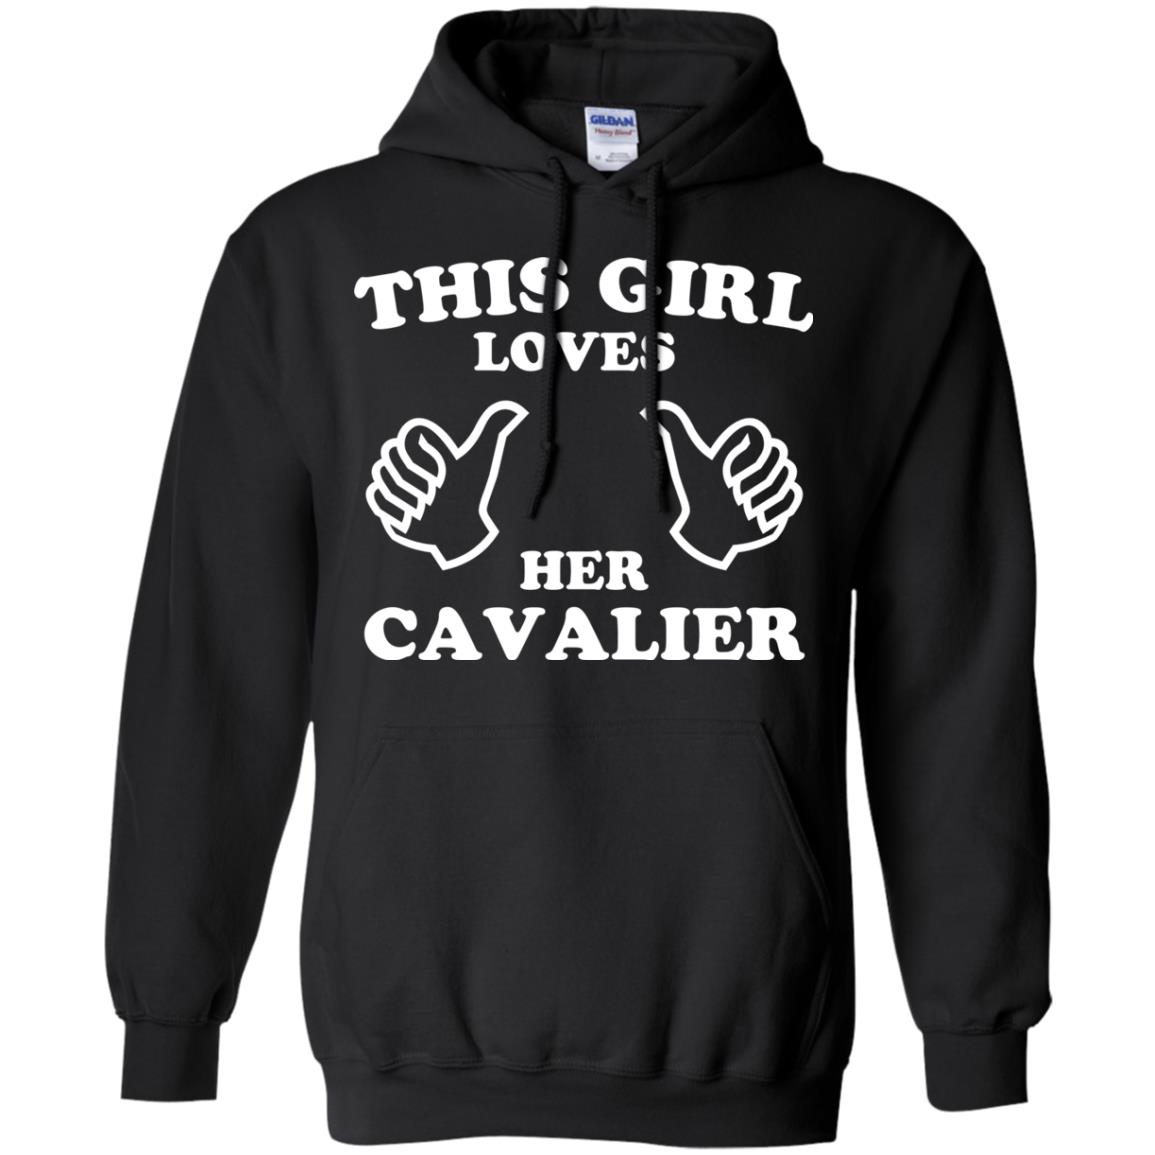 This Girl Loves Her Cavalier Hoodie Black